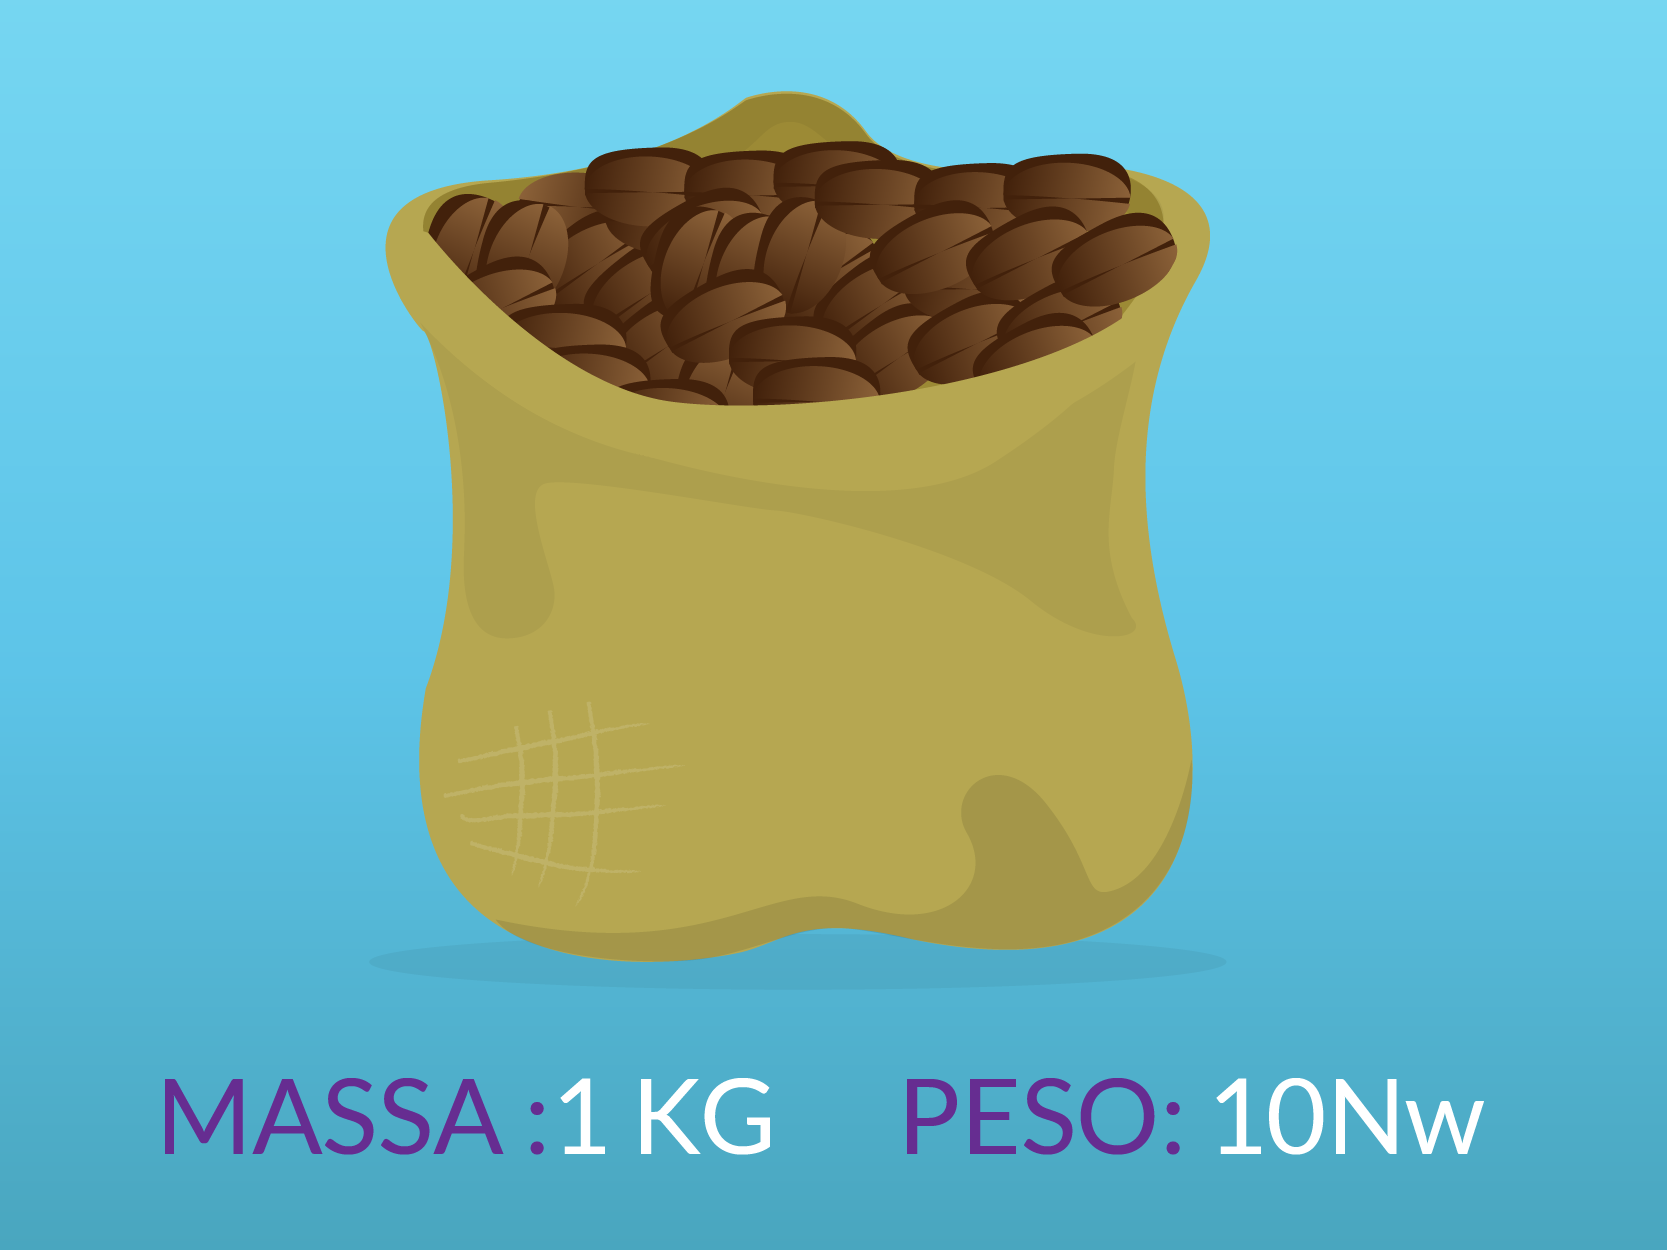 Um saco com uma massa de 1 quilo tem um peso de 10 Newtons.